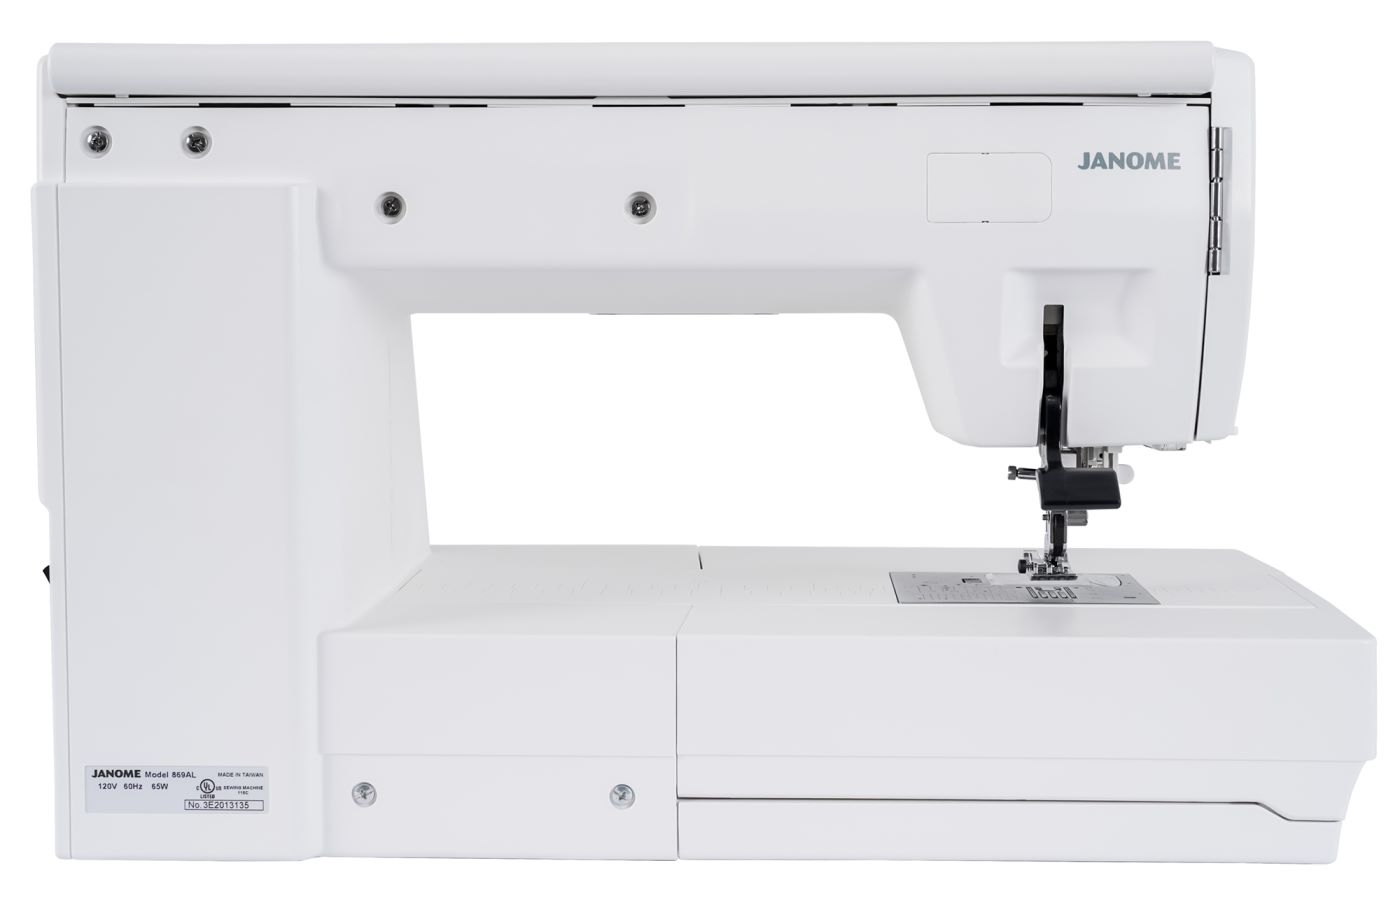 JANOME MC 9410QC